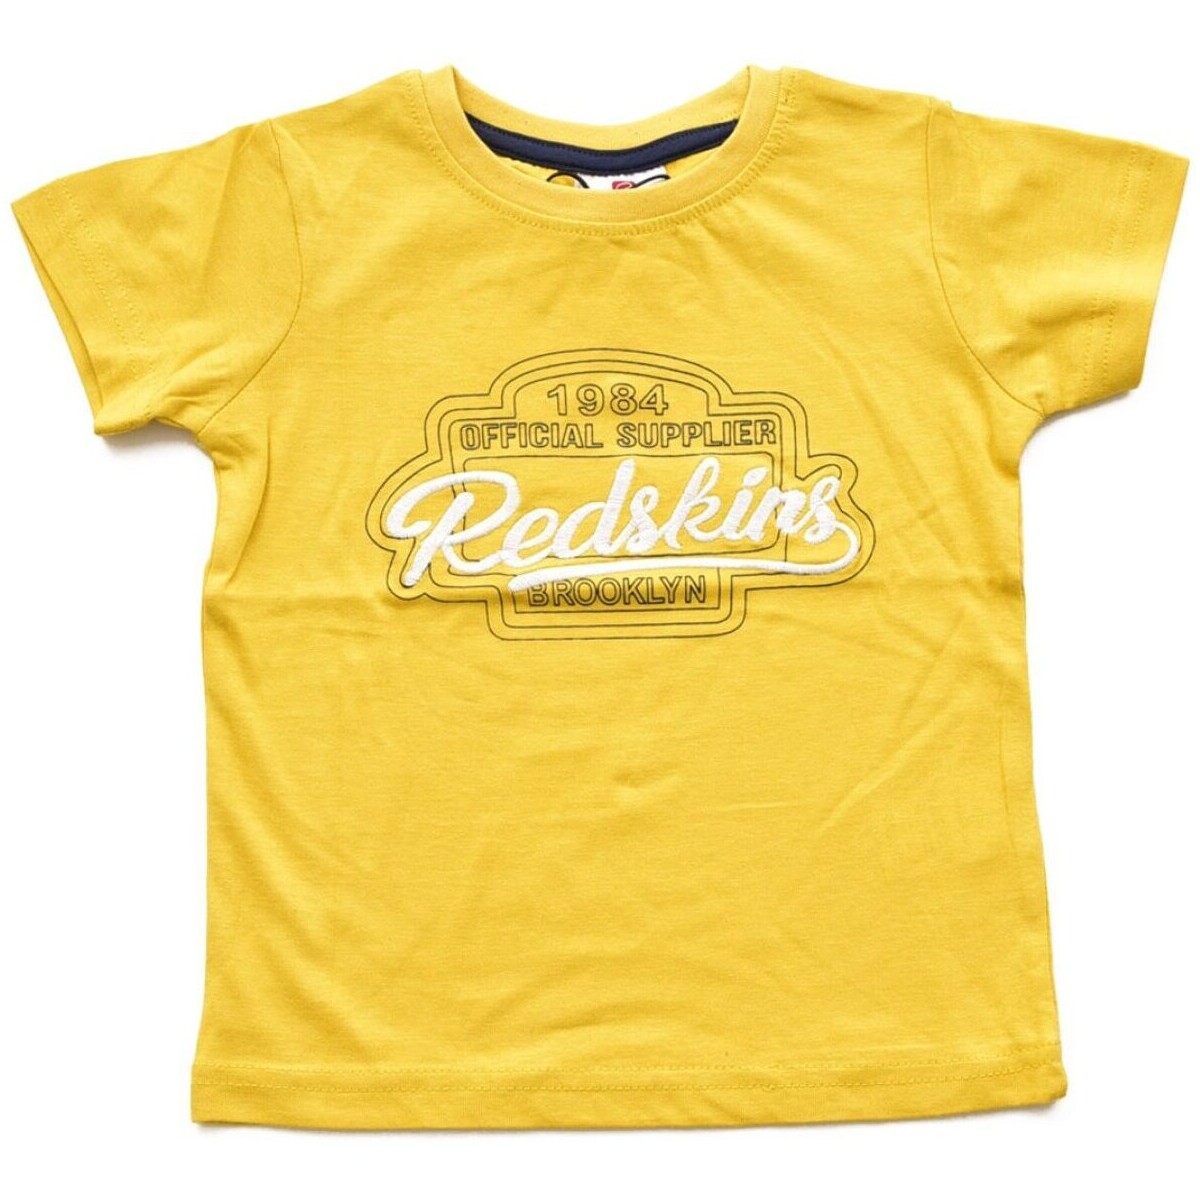 Textil Děti Trička & Pola Redskins RS2284 Žlutá